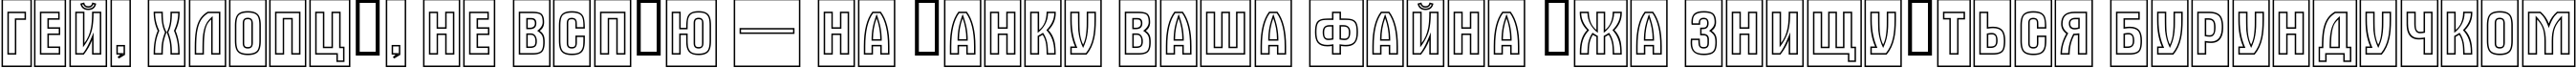 Пример написания шрифтом a_AlternaTitulCmOtl текста на украинском